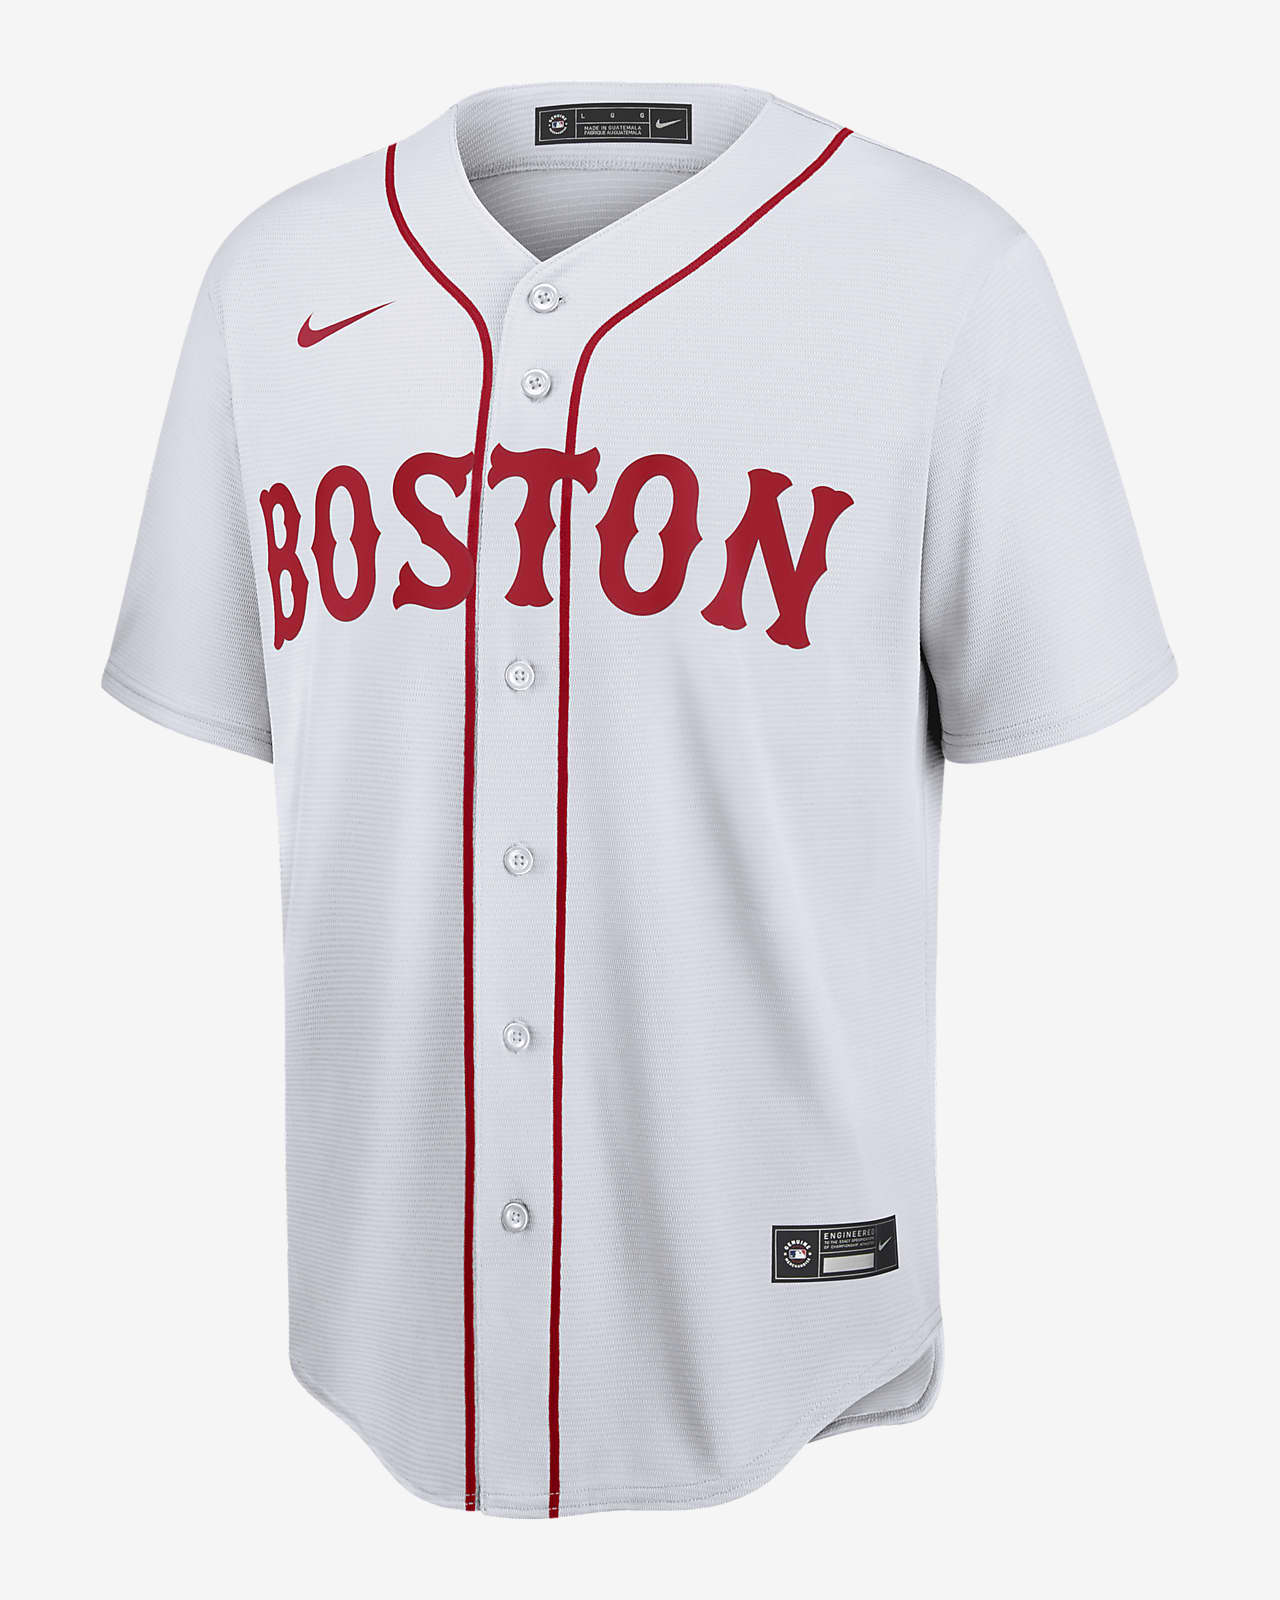 replica jersey boston